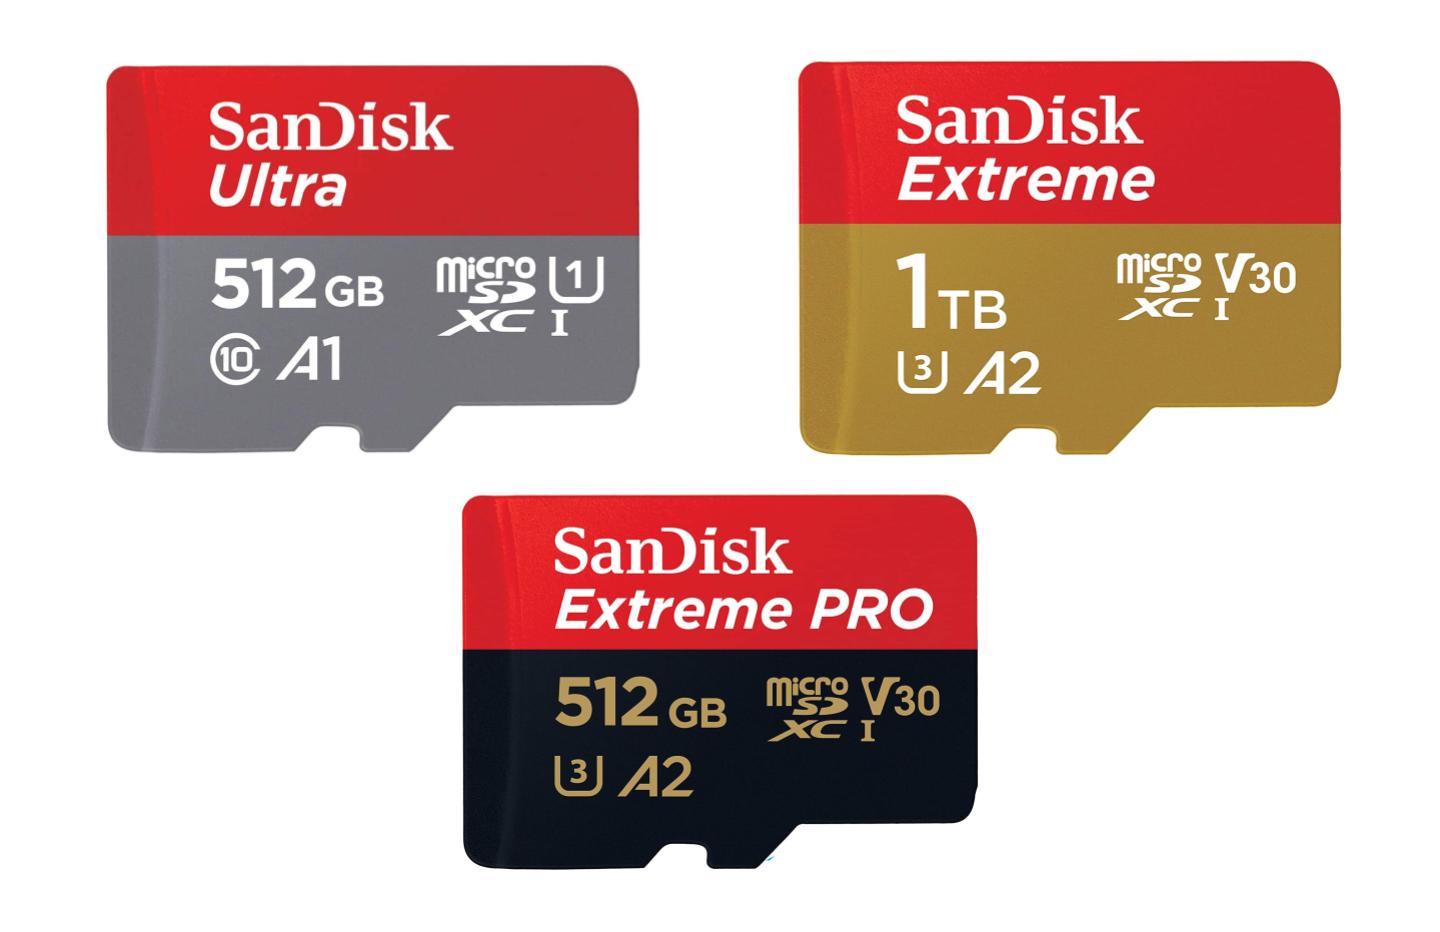 Quel est la meilleur marque de carte SD ?